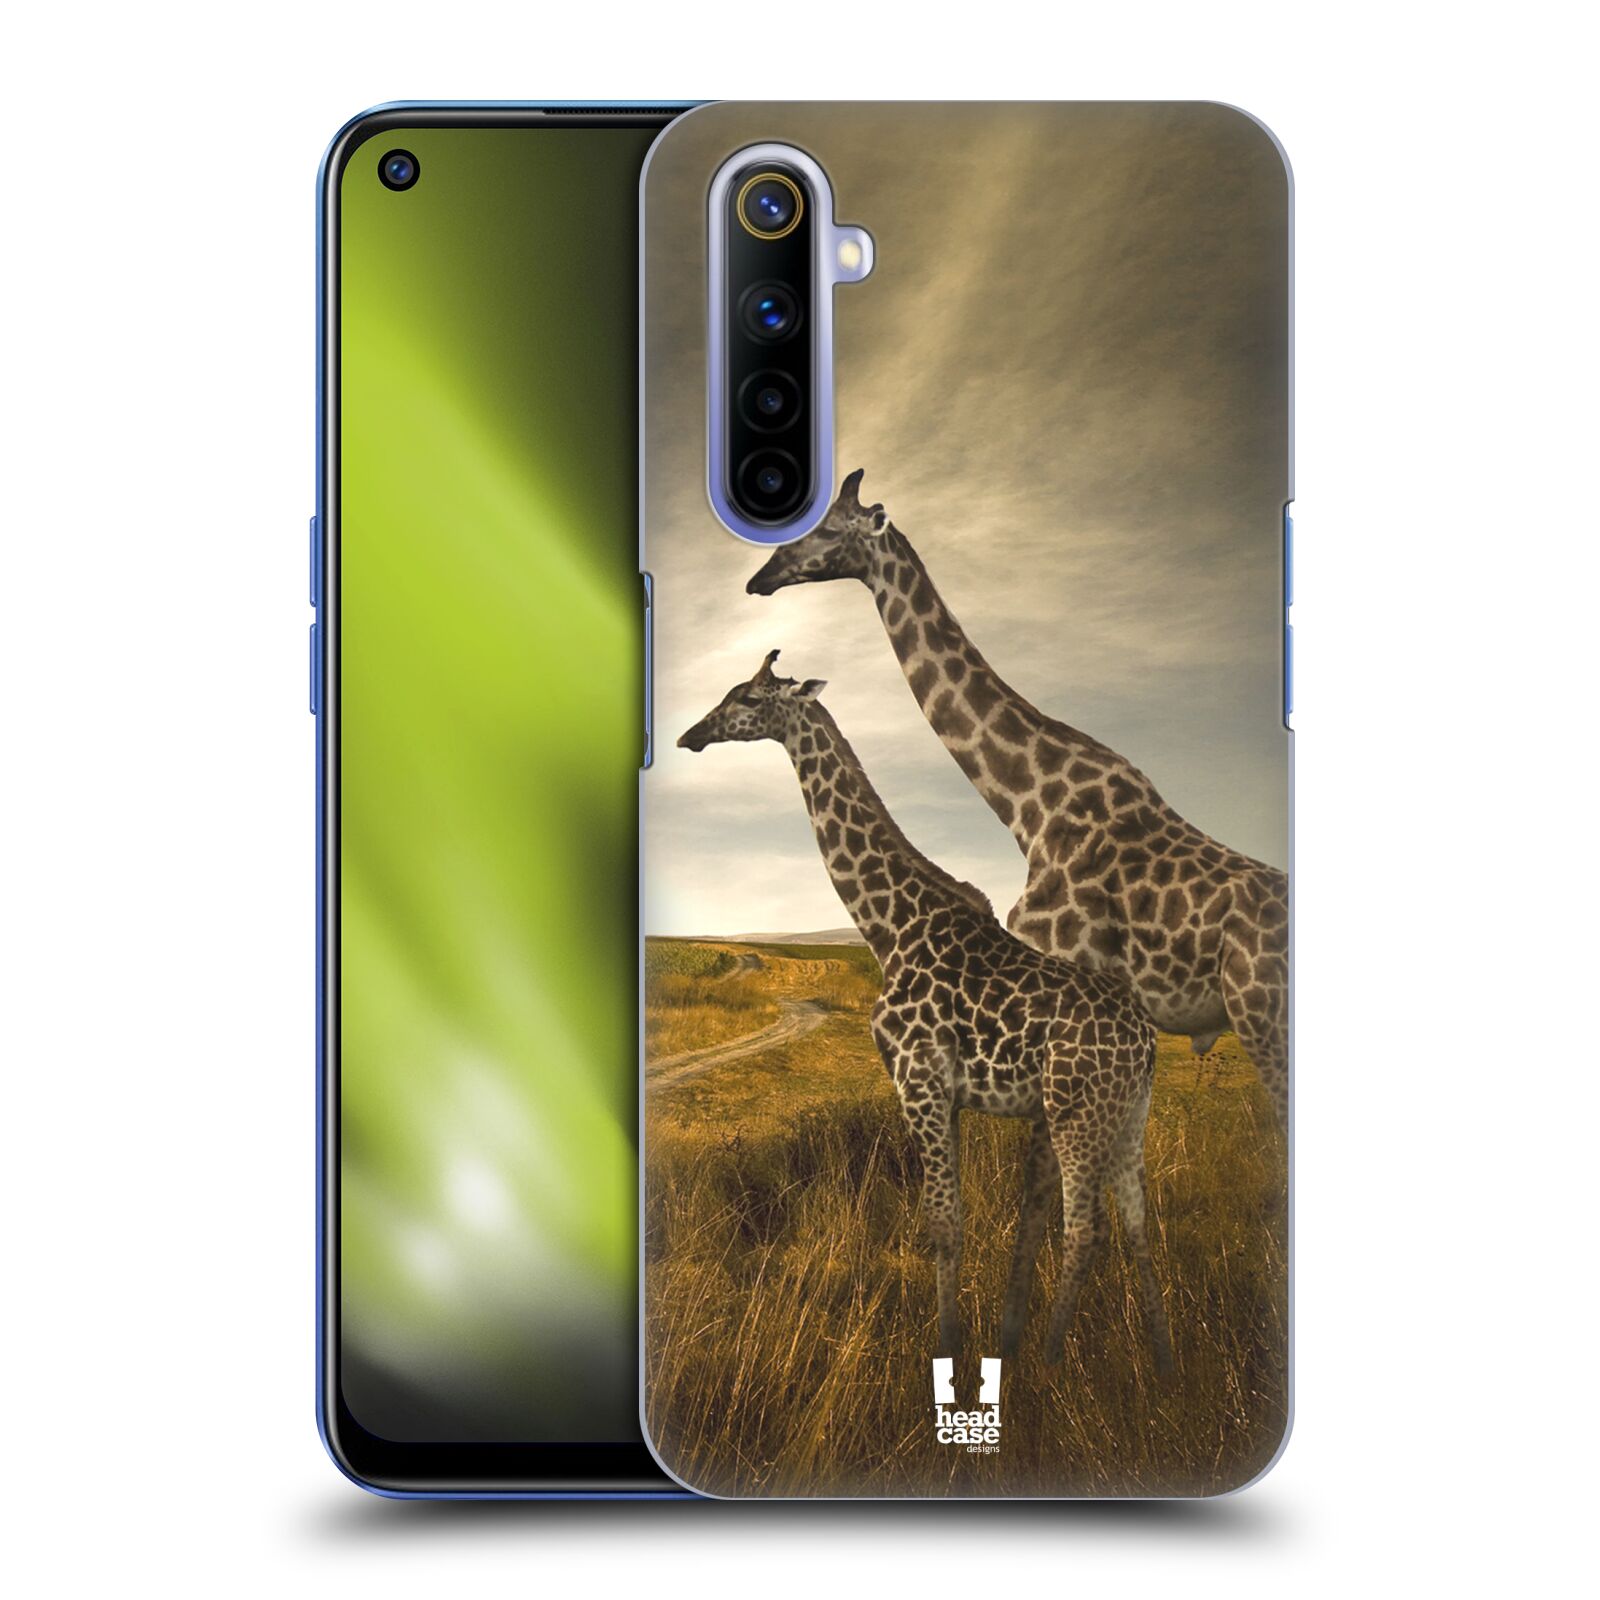 Zadní obal pro mobil Realme 6 - HEAD CASE - Svět zvířat žirafy